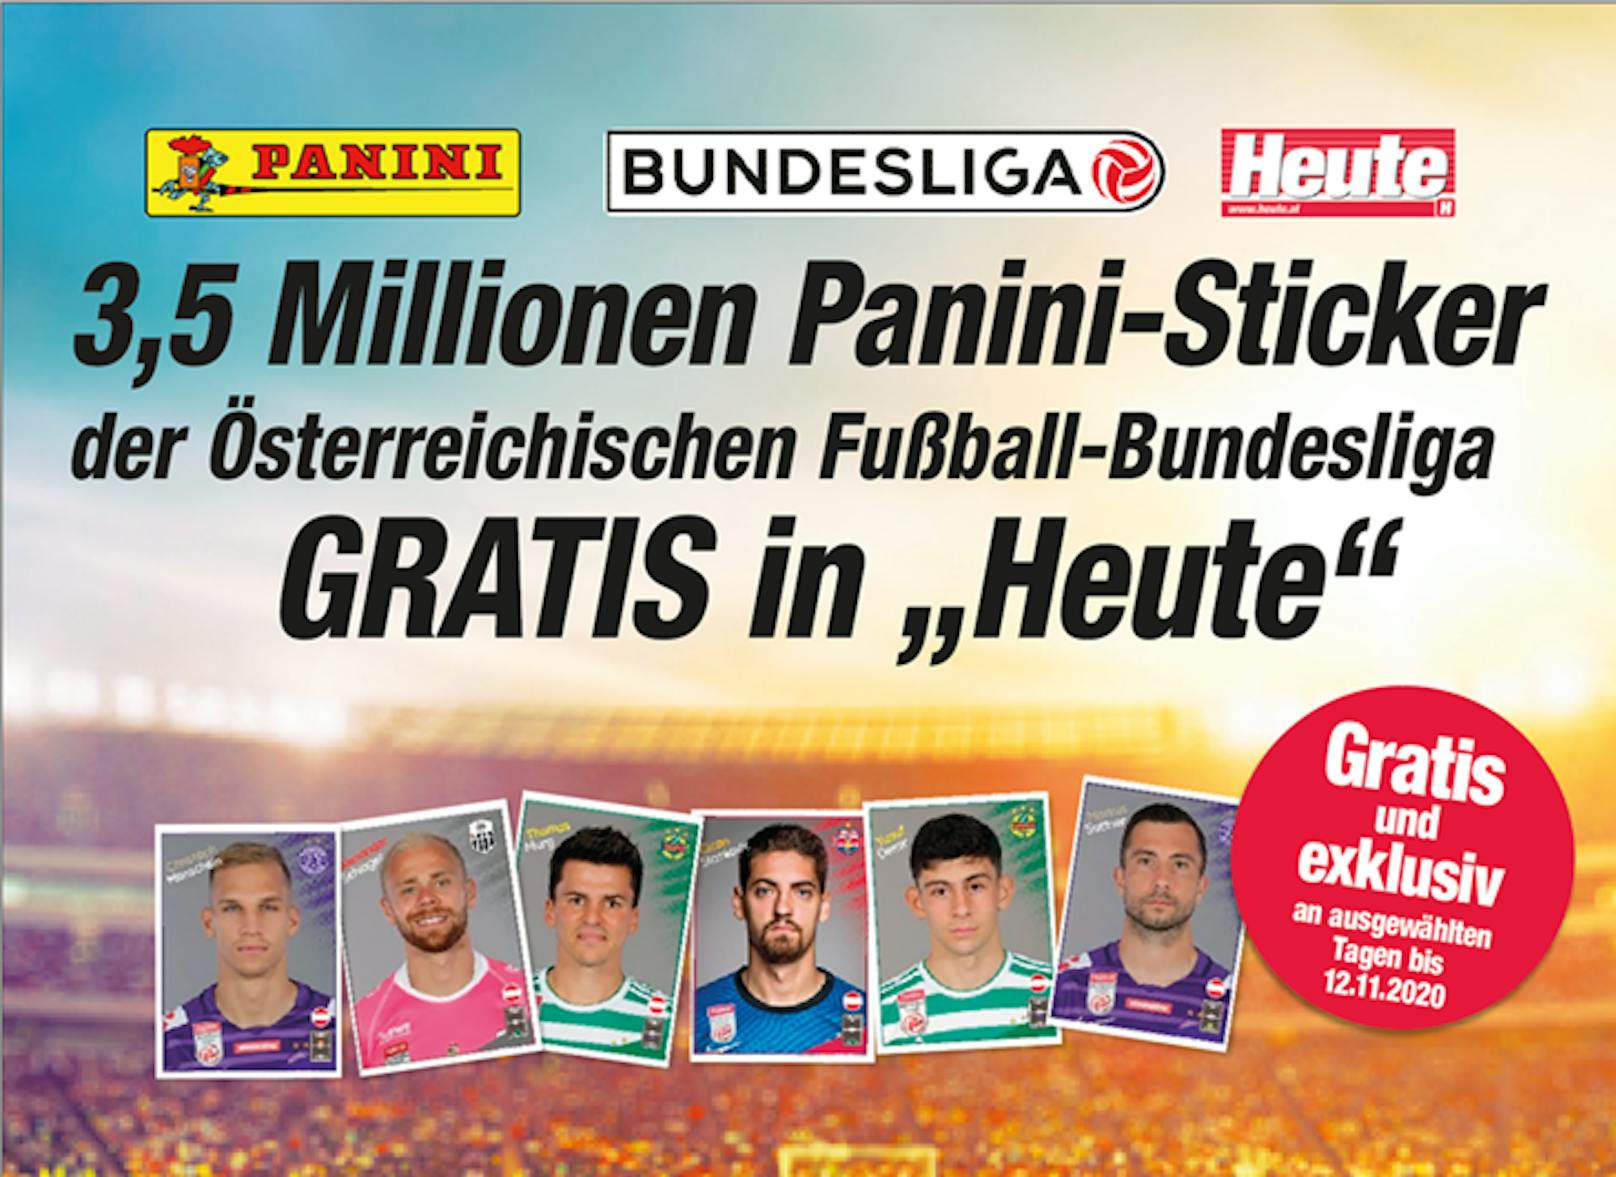 An ausgewählten Tagen findest du Sticker von Spielern der Österreichischen Fußball-Bundesliga in deiner <em>"Heute"</em>-Zeitung.